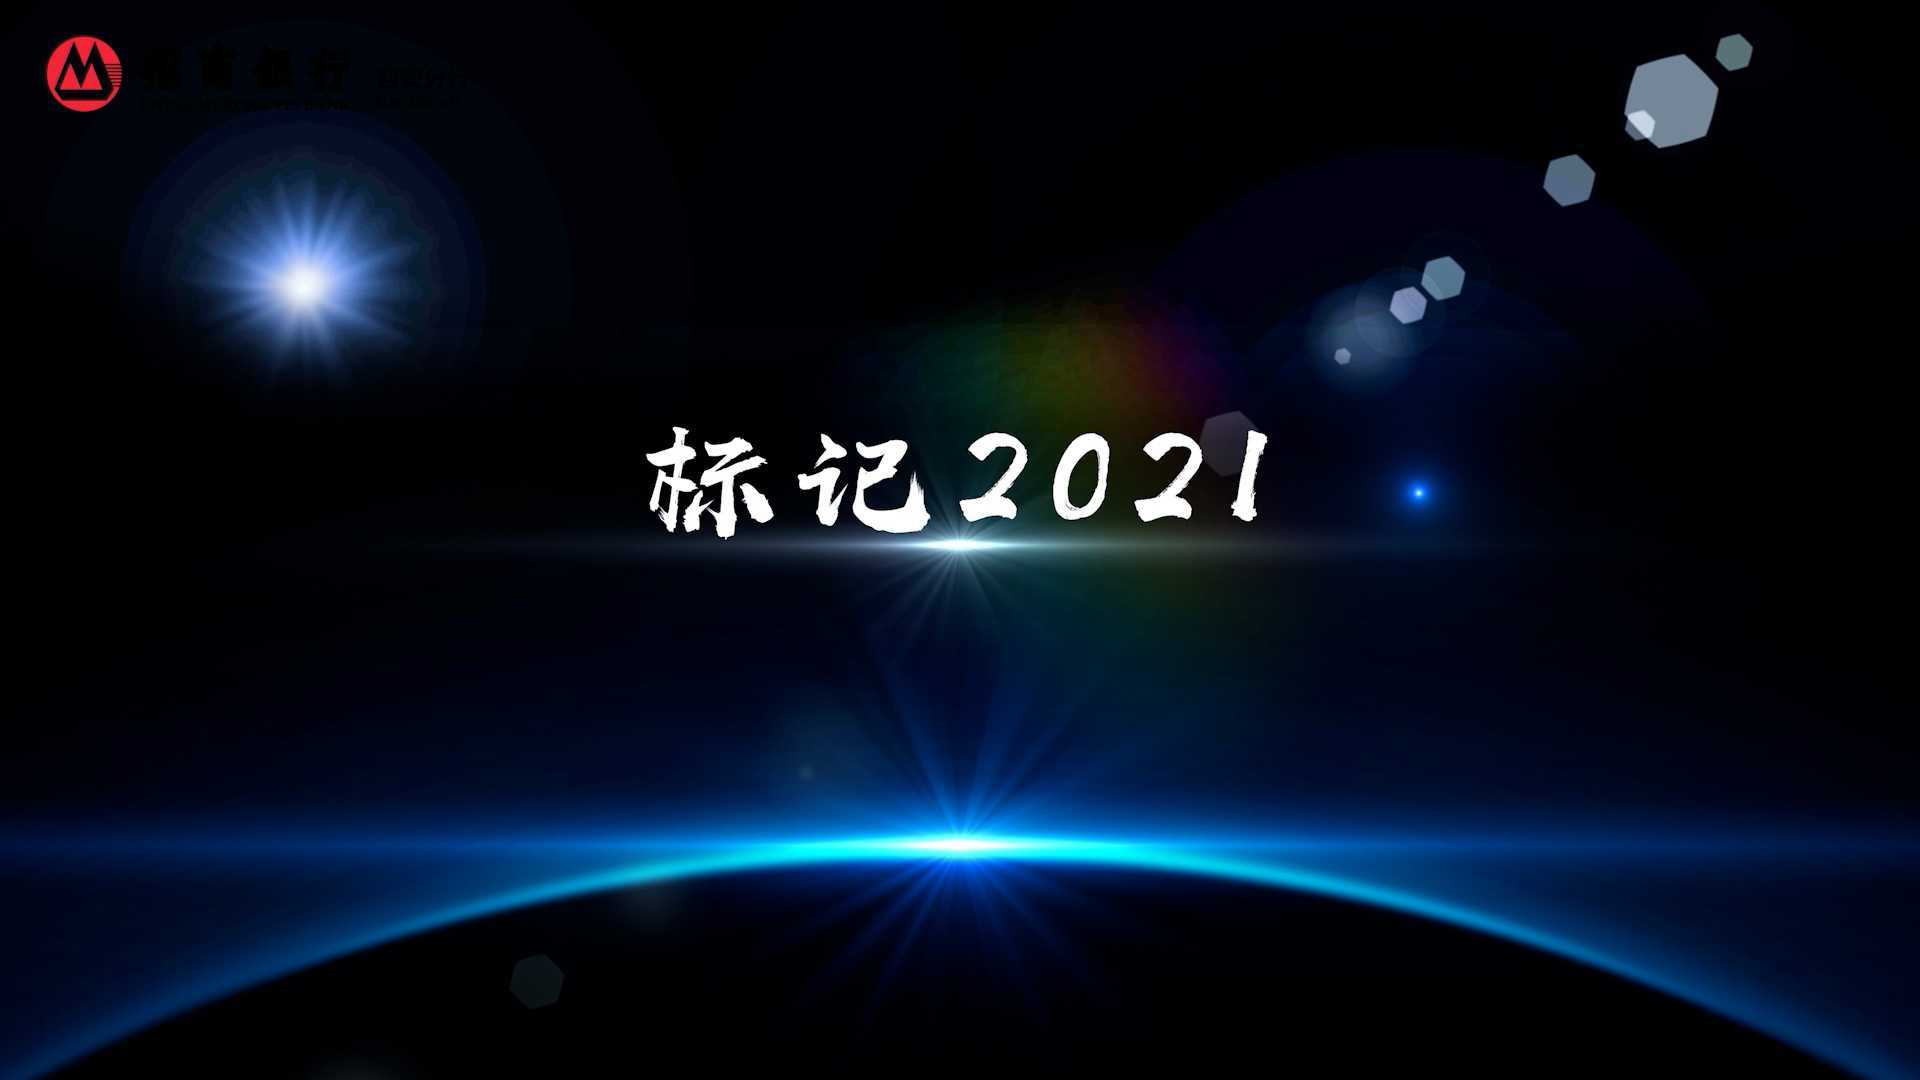 招商银行西安分行宣传片《标记2021》